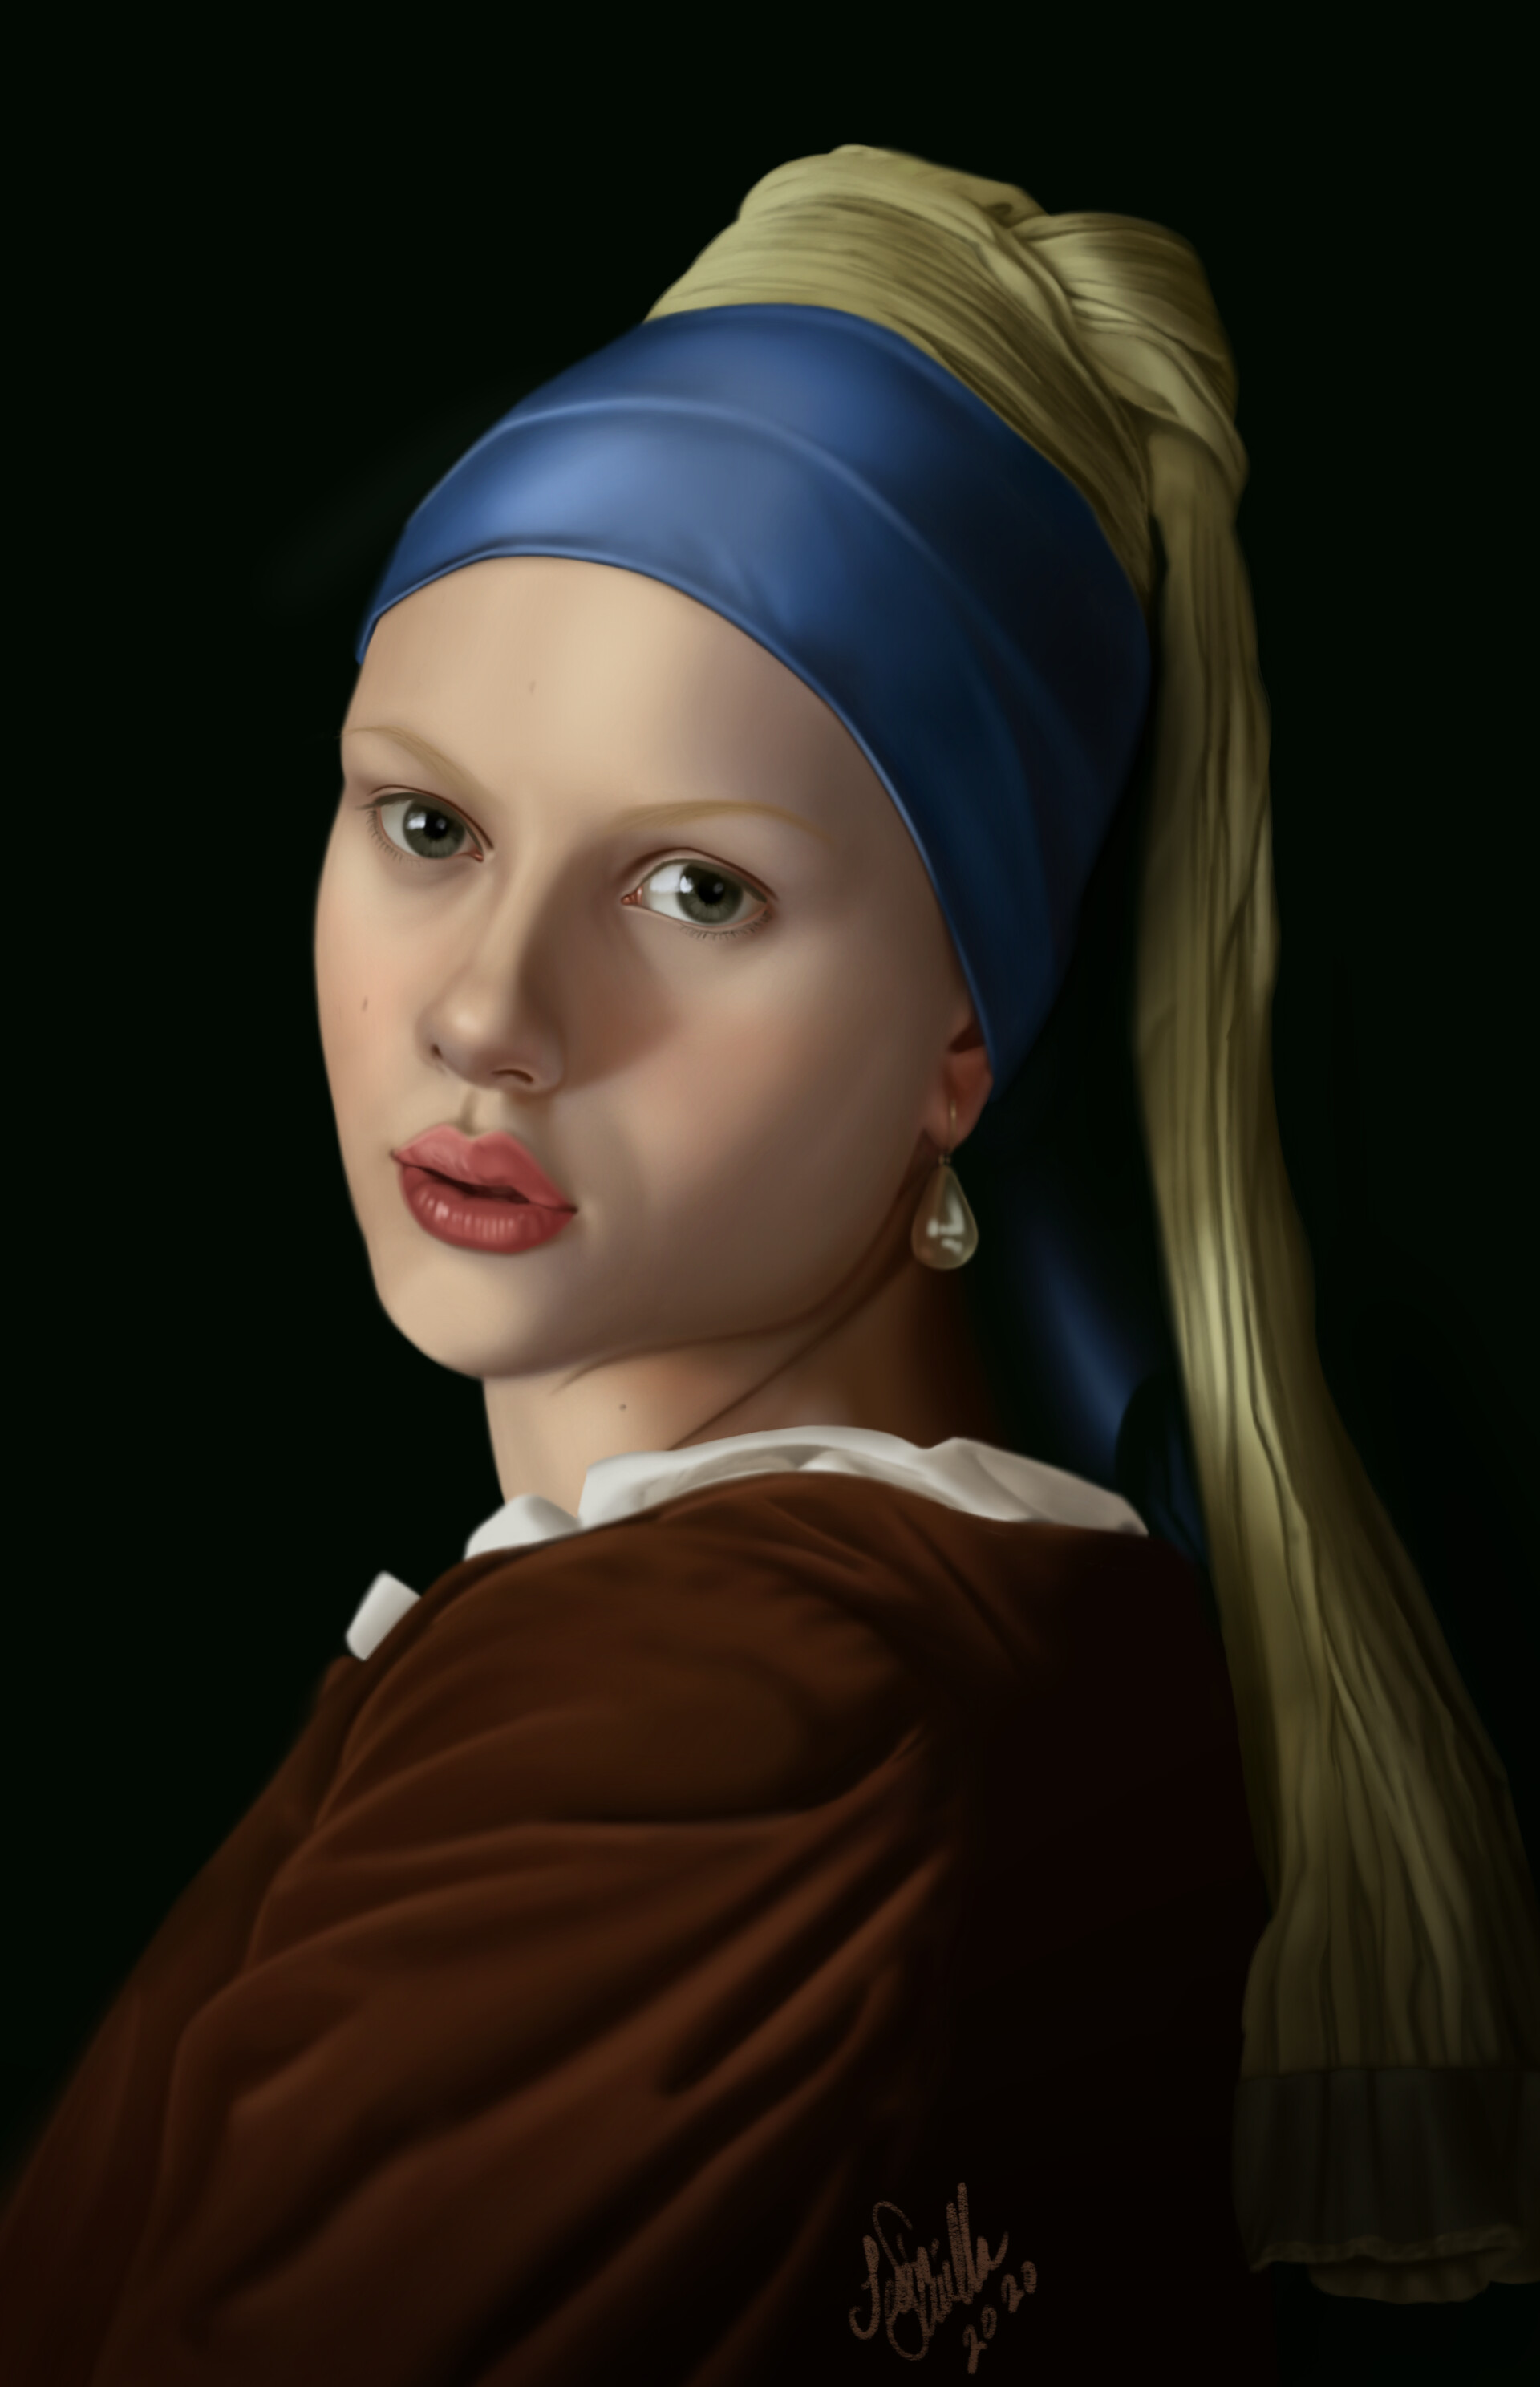 ArtStation - Scarlett With a Pearl Earring